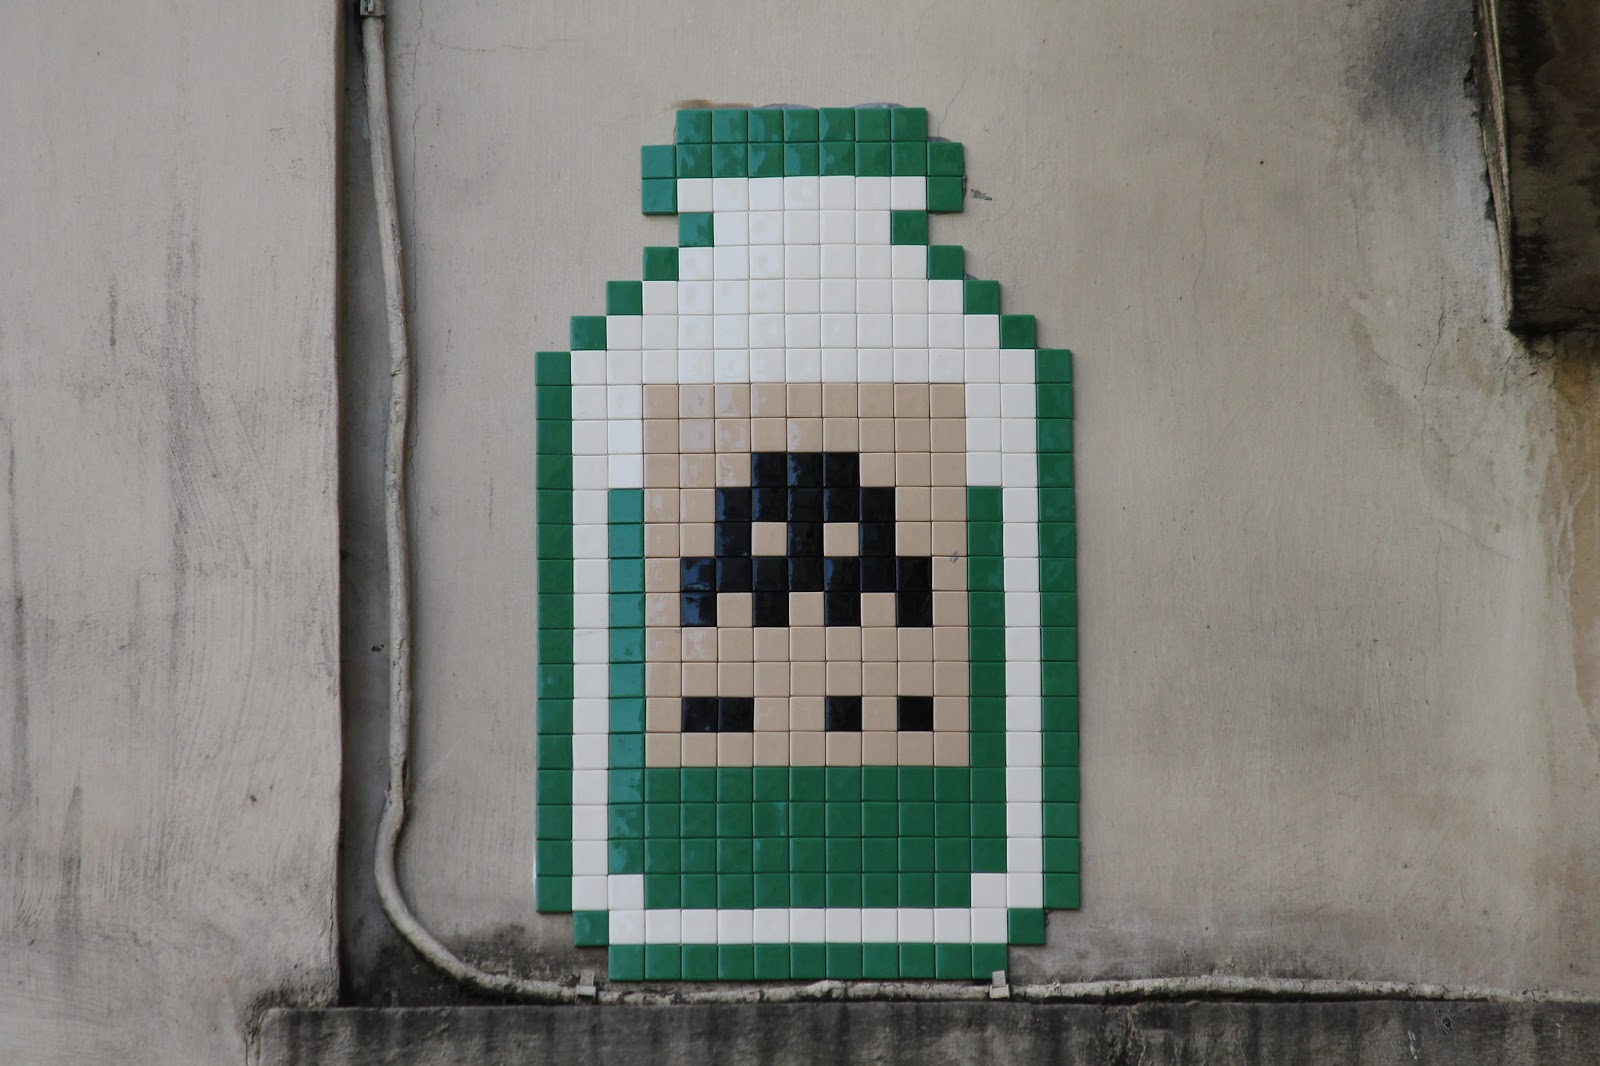 法国艺术家Invader创作于巴黎街头有趣的电子像素作品